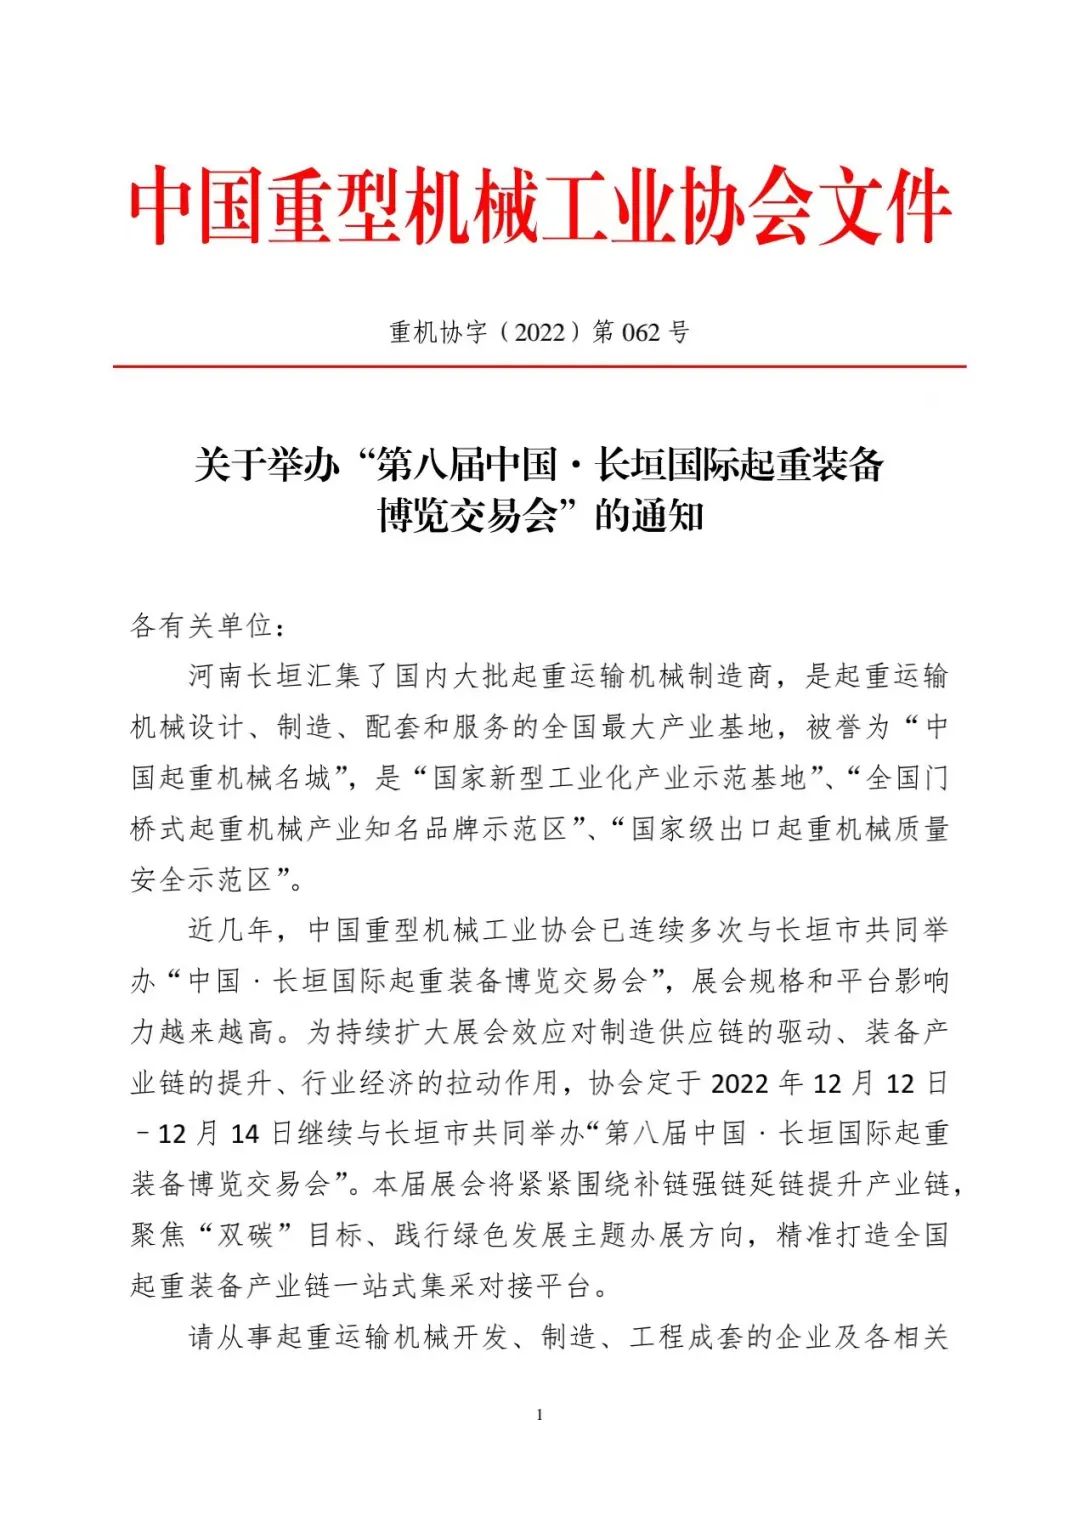 关于举办“第八届中国•长垣国际起重装备博览交易会”的通知